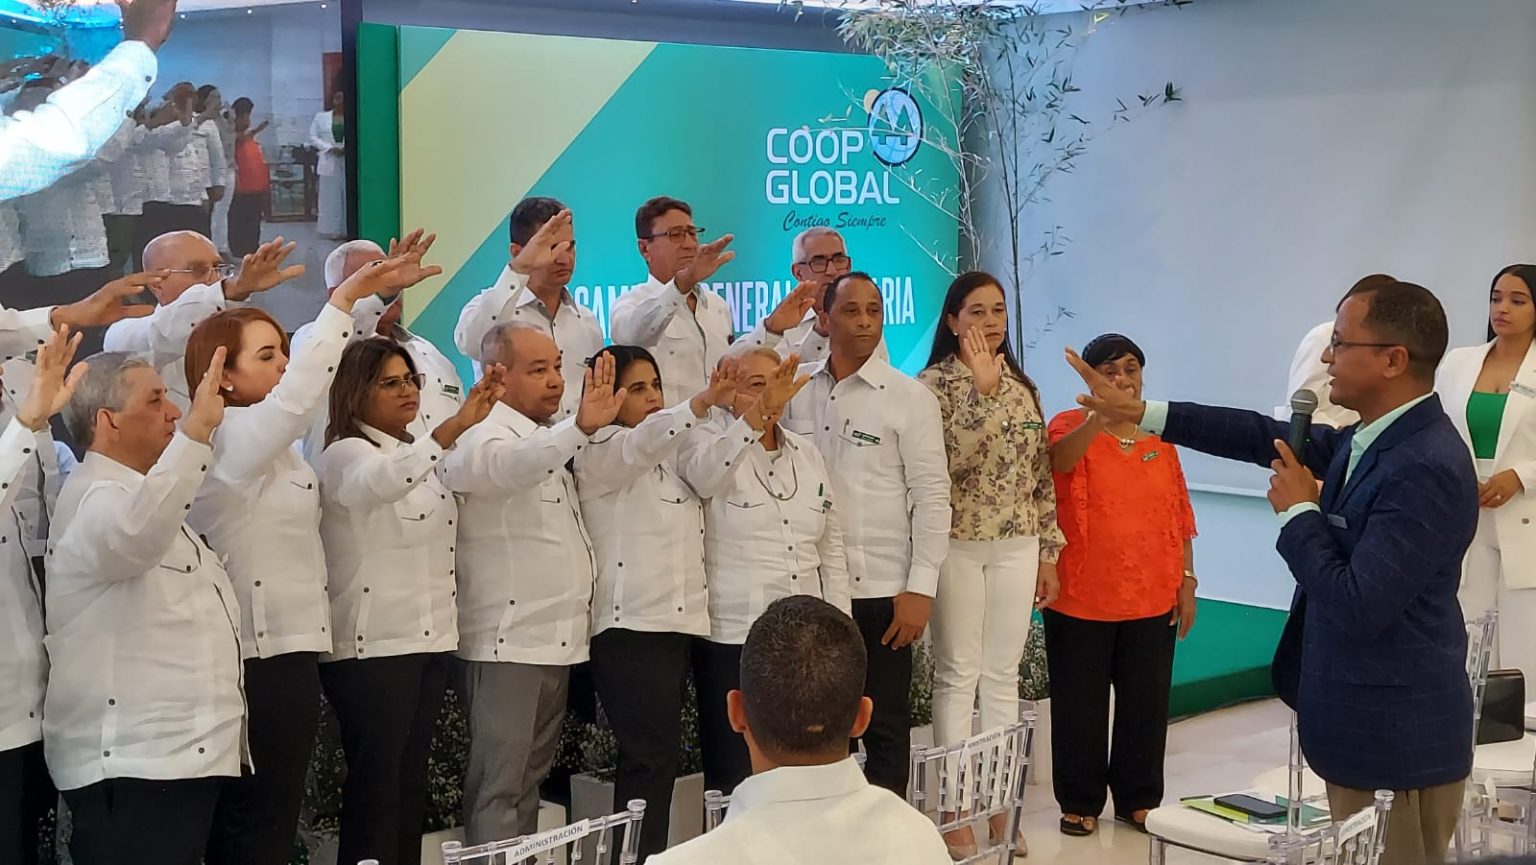 Cooperativa Global un ejemplo de crecimiento sostenible de la economia solidaria